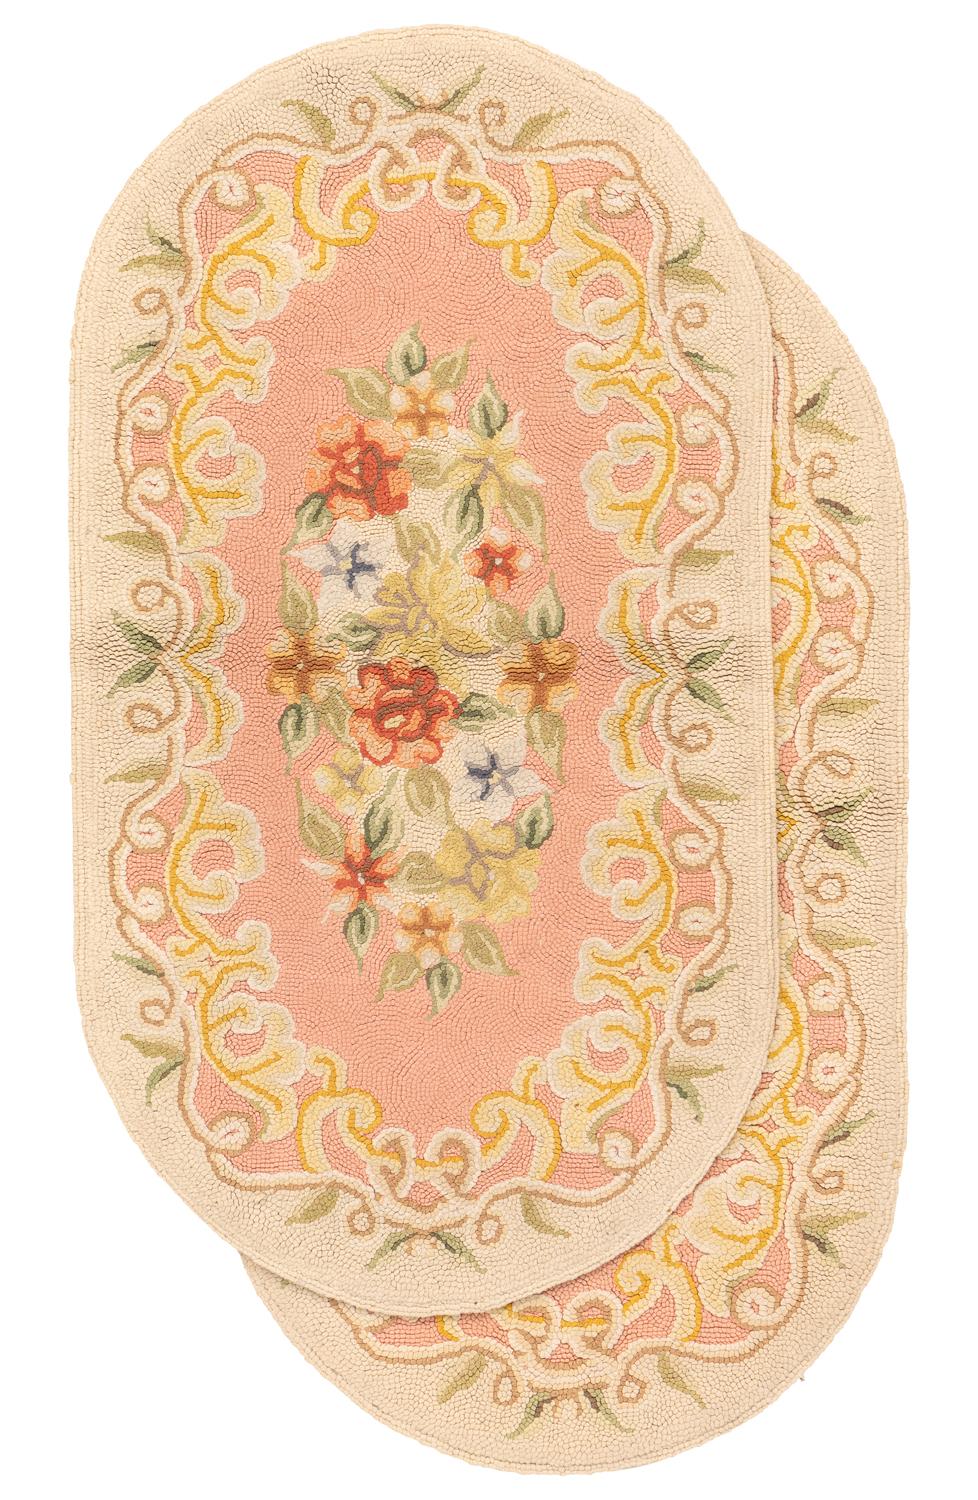 Dies ist ein Paar antiker amerikanischer Hakenteppiche, die zu Beginn des 20. Jahrhunderts um 1900 gewebt wurden und 108 x 60 cm groß sind. Diese ovalen Teppiche haben ein florales Design mit blühenden Blumen auf zartrosa Hintergrundfarbe. Die